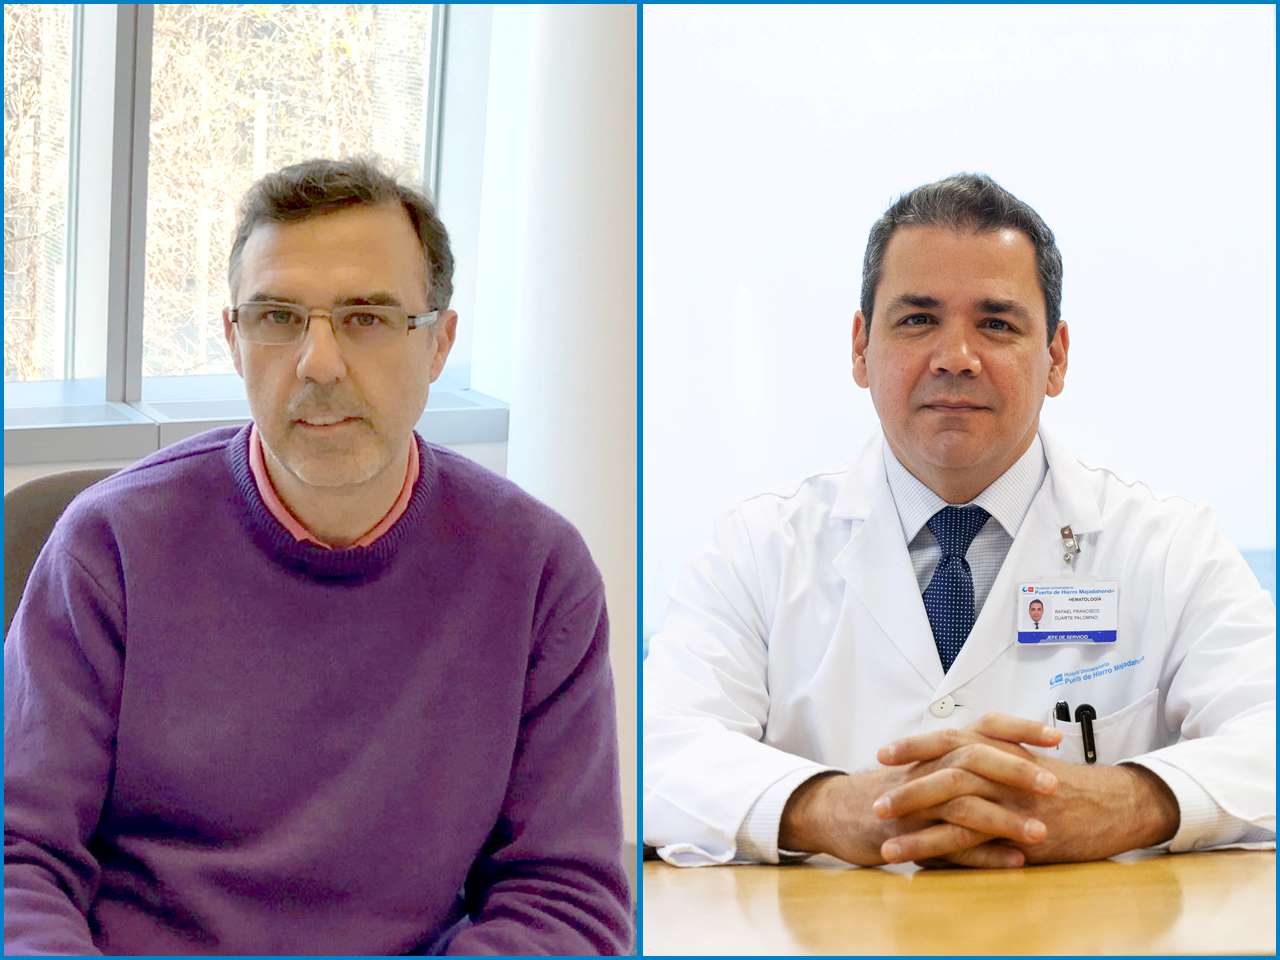 Composición de dos fotografías que muestran, a la izquierda, al profesor Francisco J. García-Vidal y a la derecha al doctor Rafael Duarte